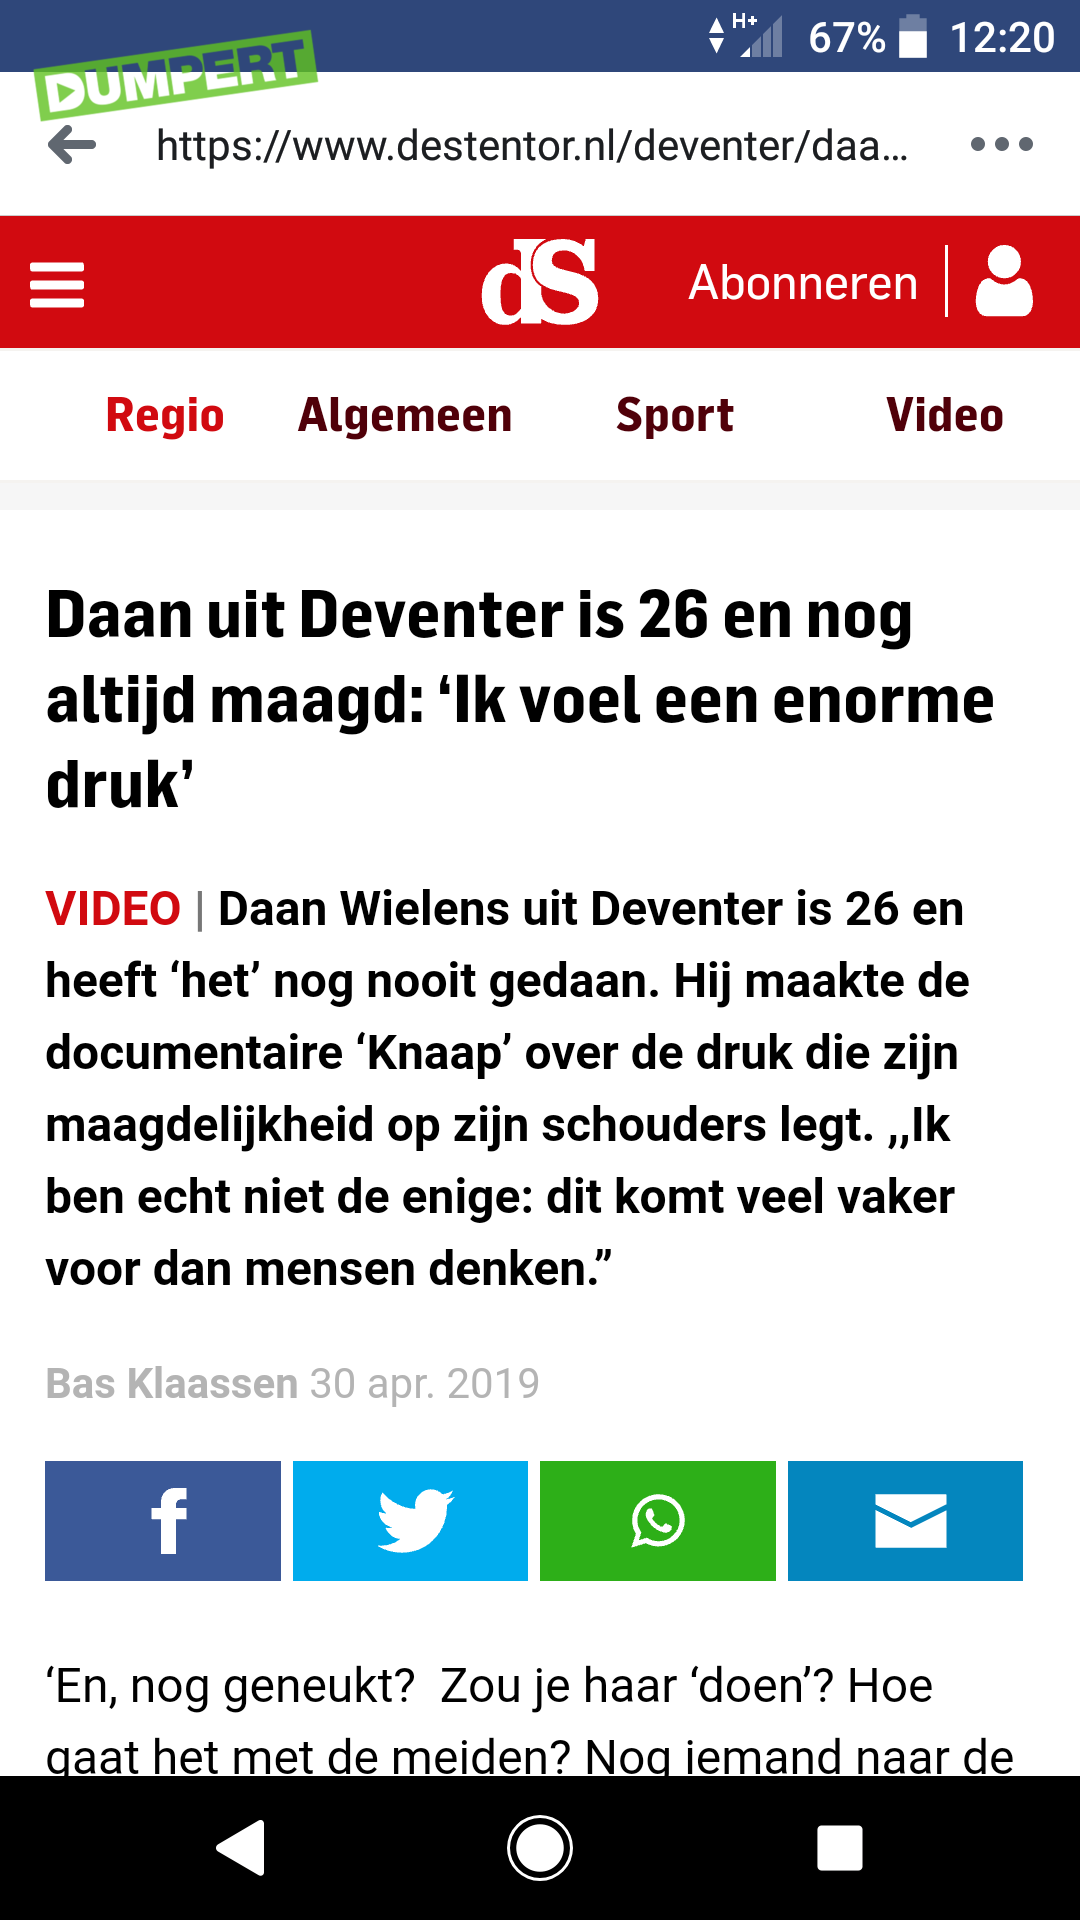 Daan uit Deventer...